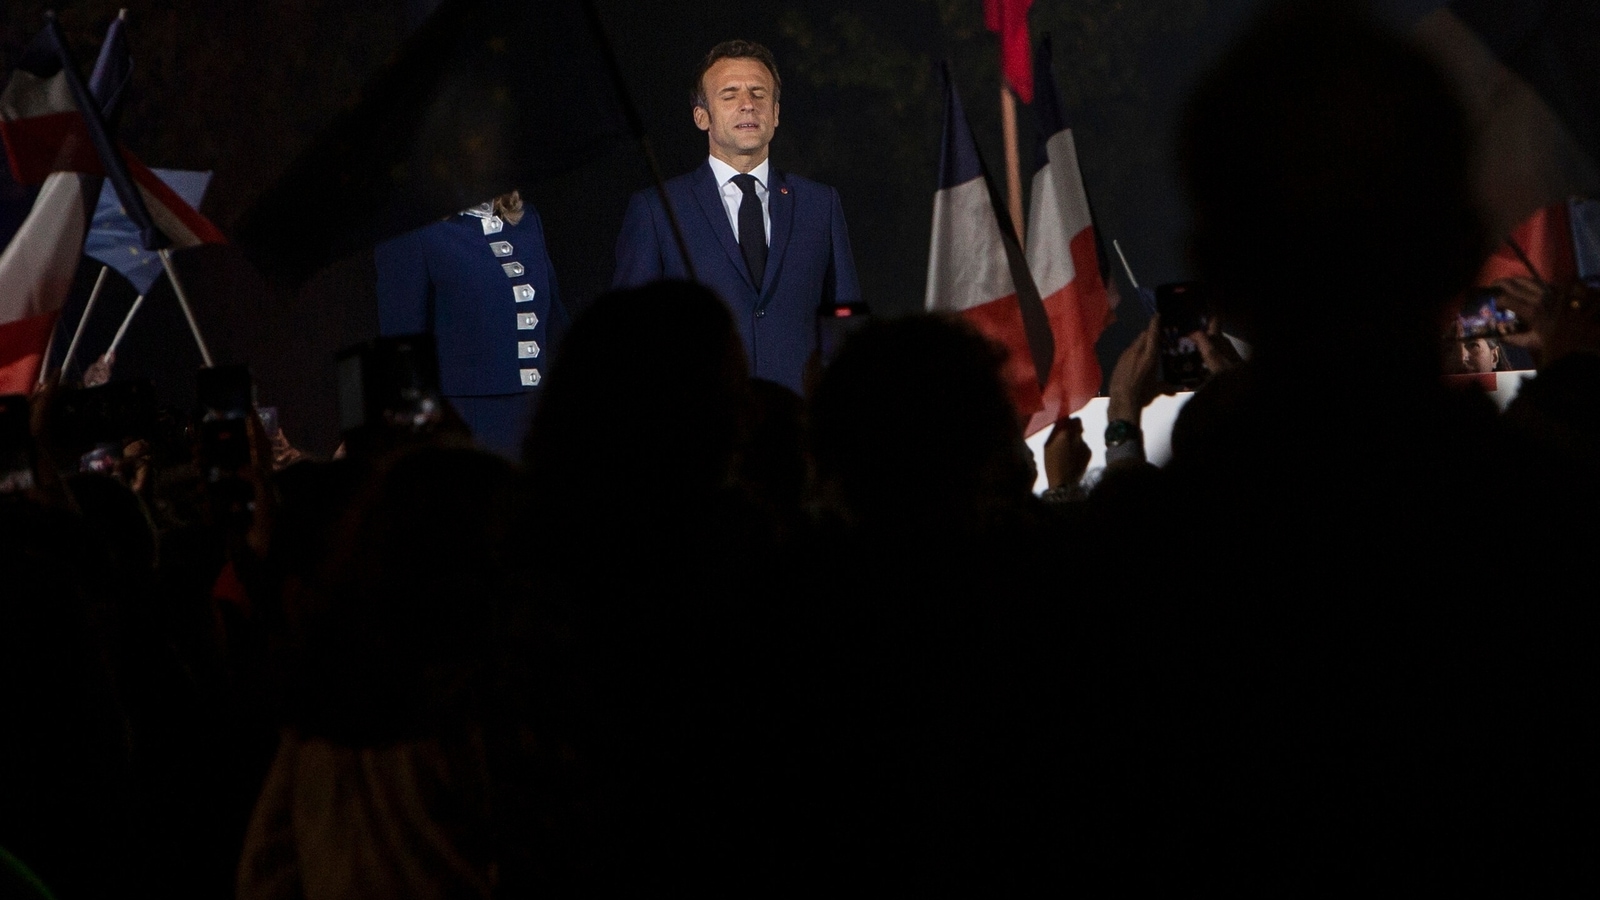 Macron din Franța reales, îl învinge pe liderul de extremă dreaptă: „Președinte pentru toți” |  Știri mondiale